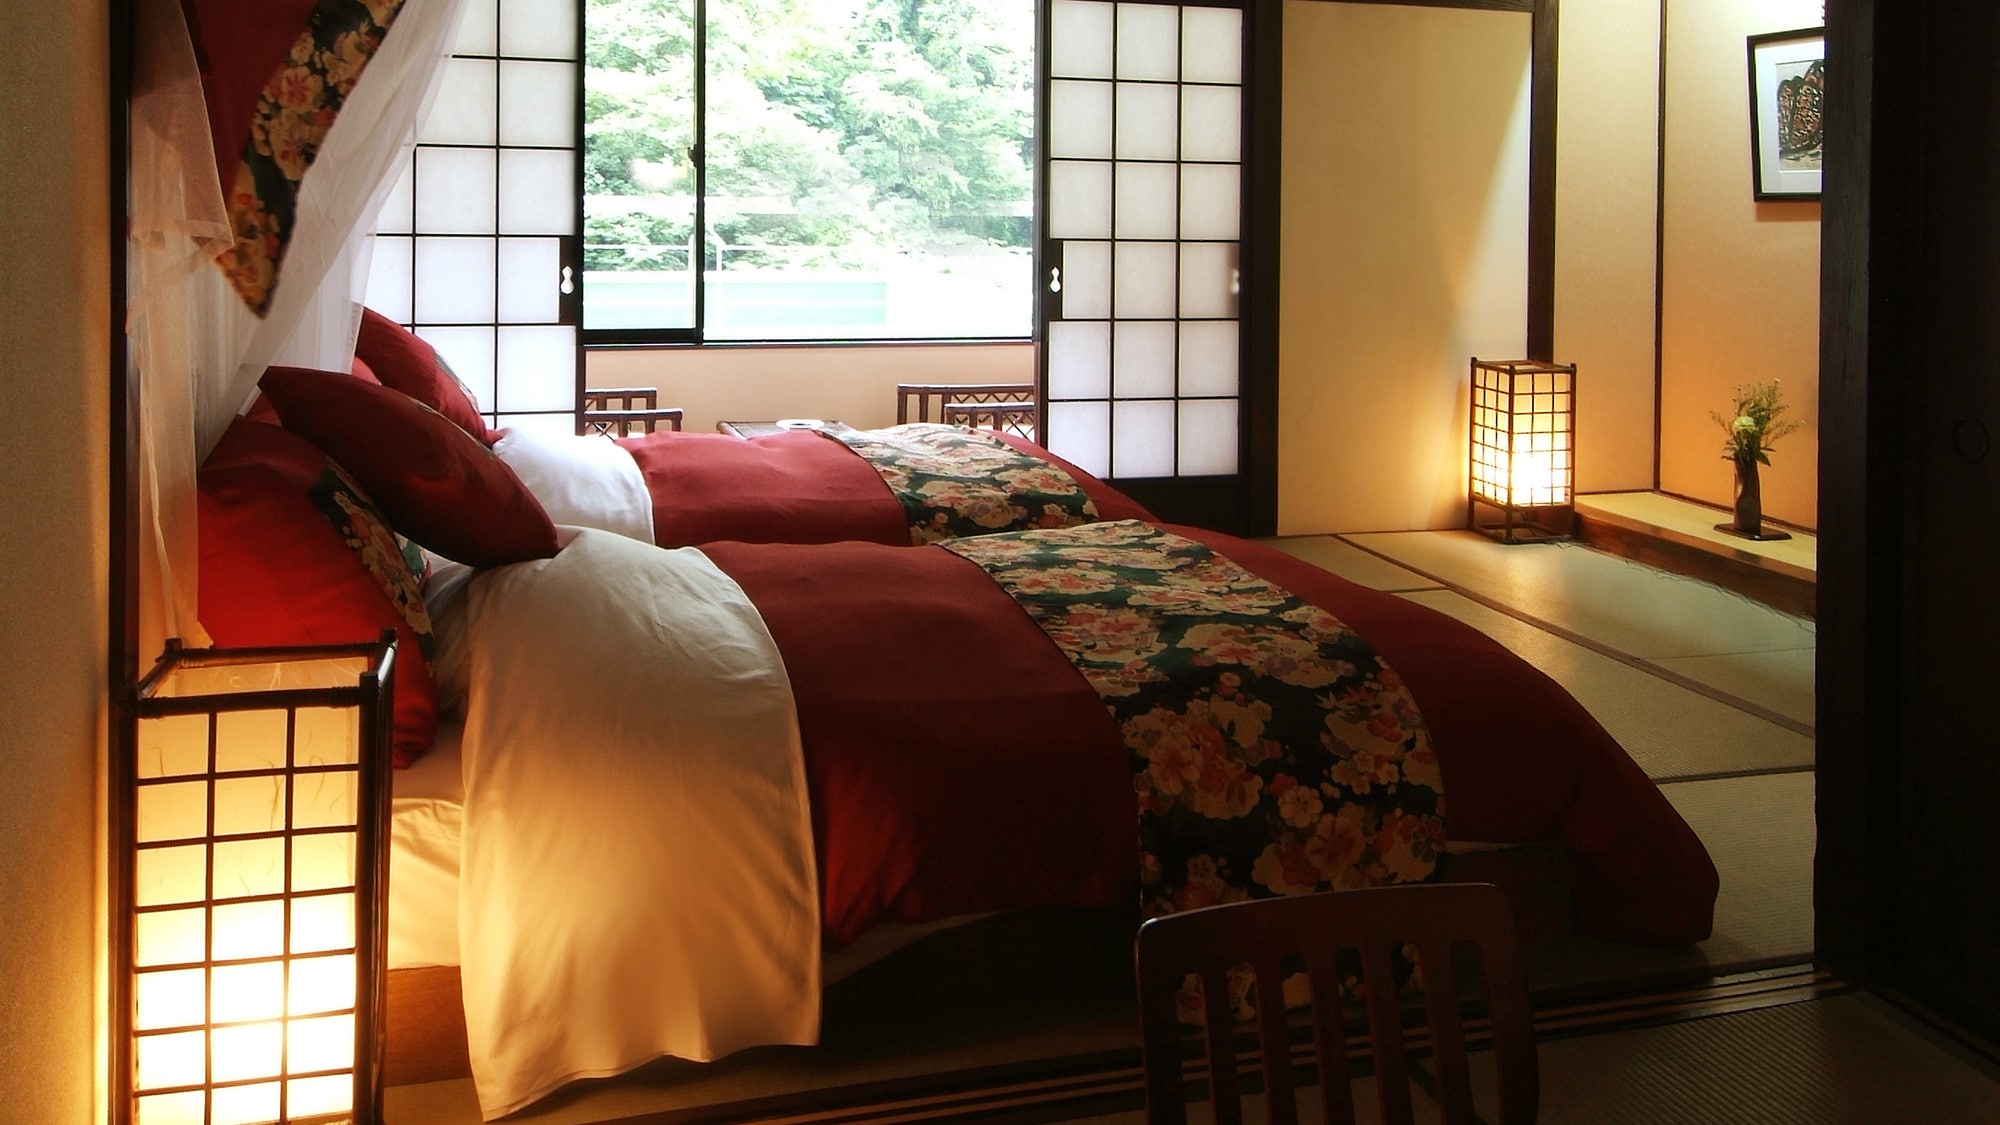 ■ Japanese modern room